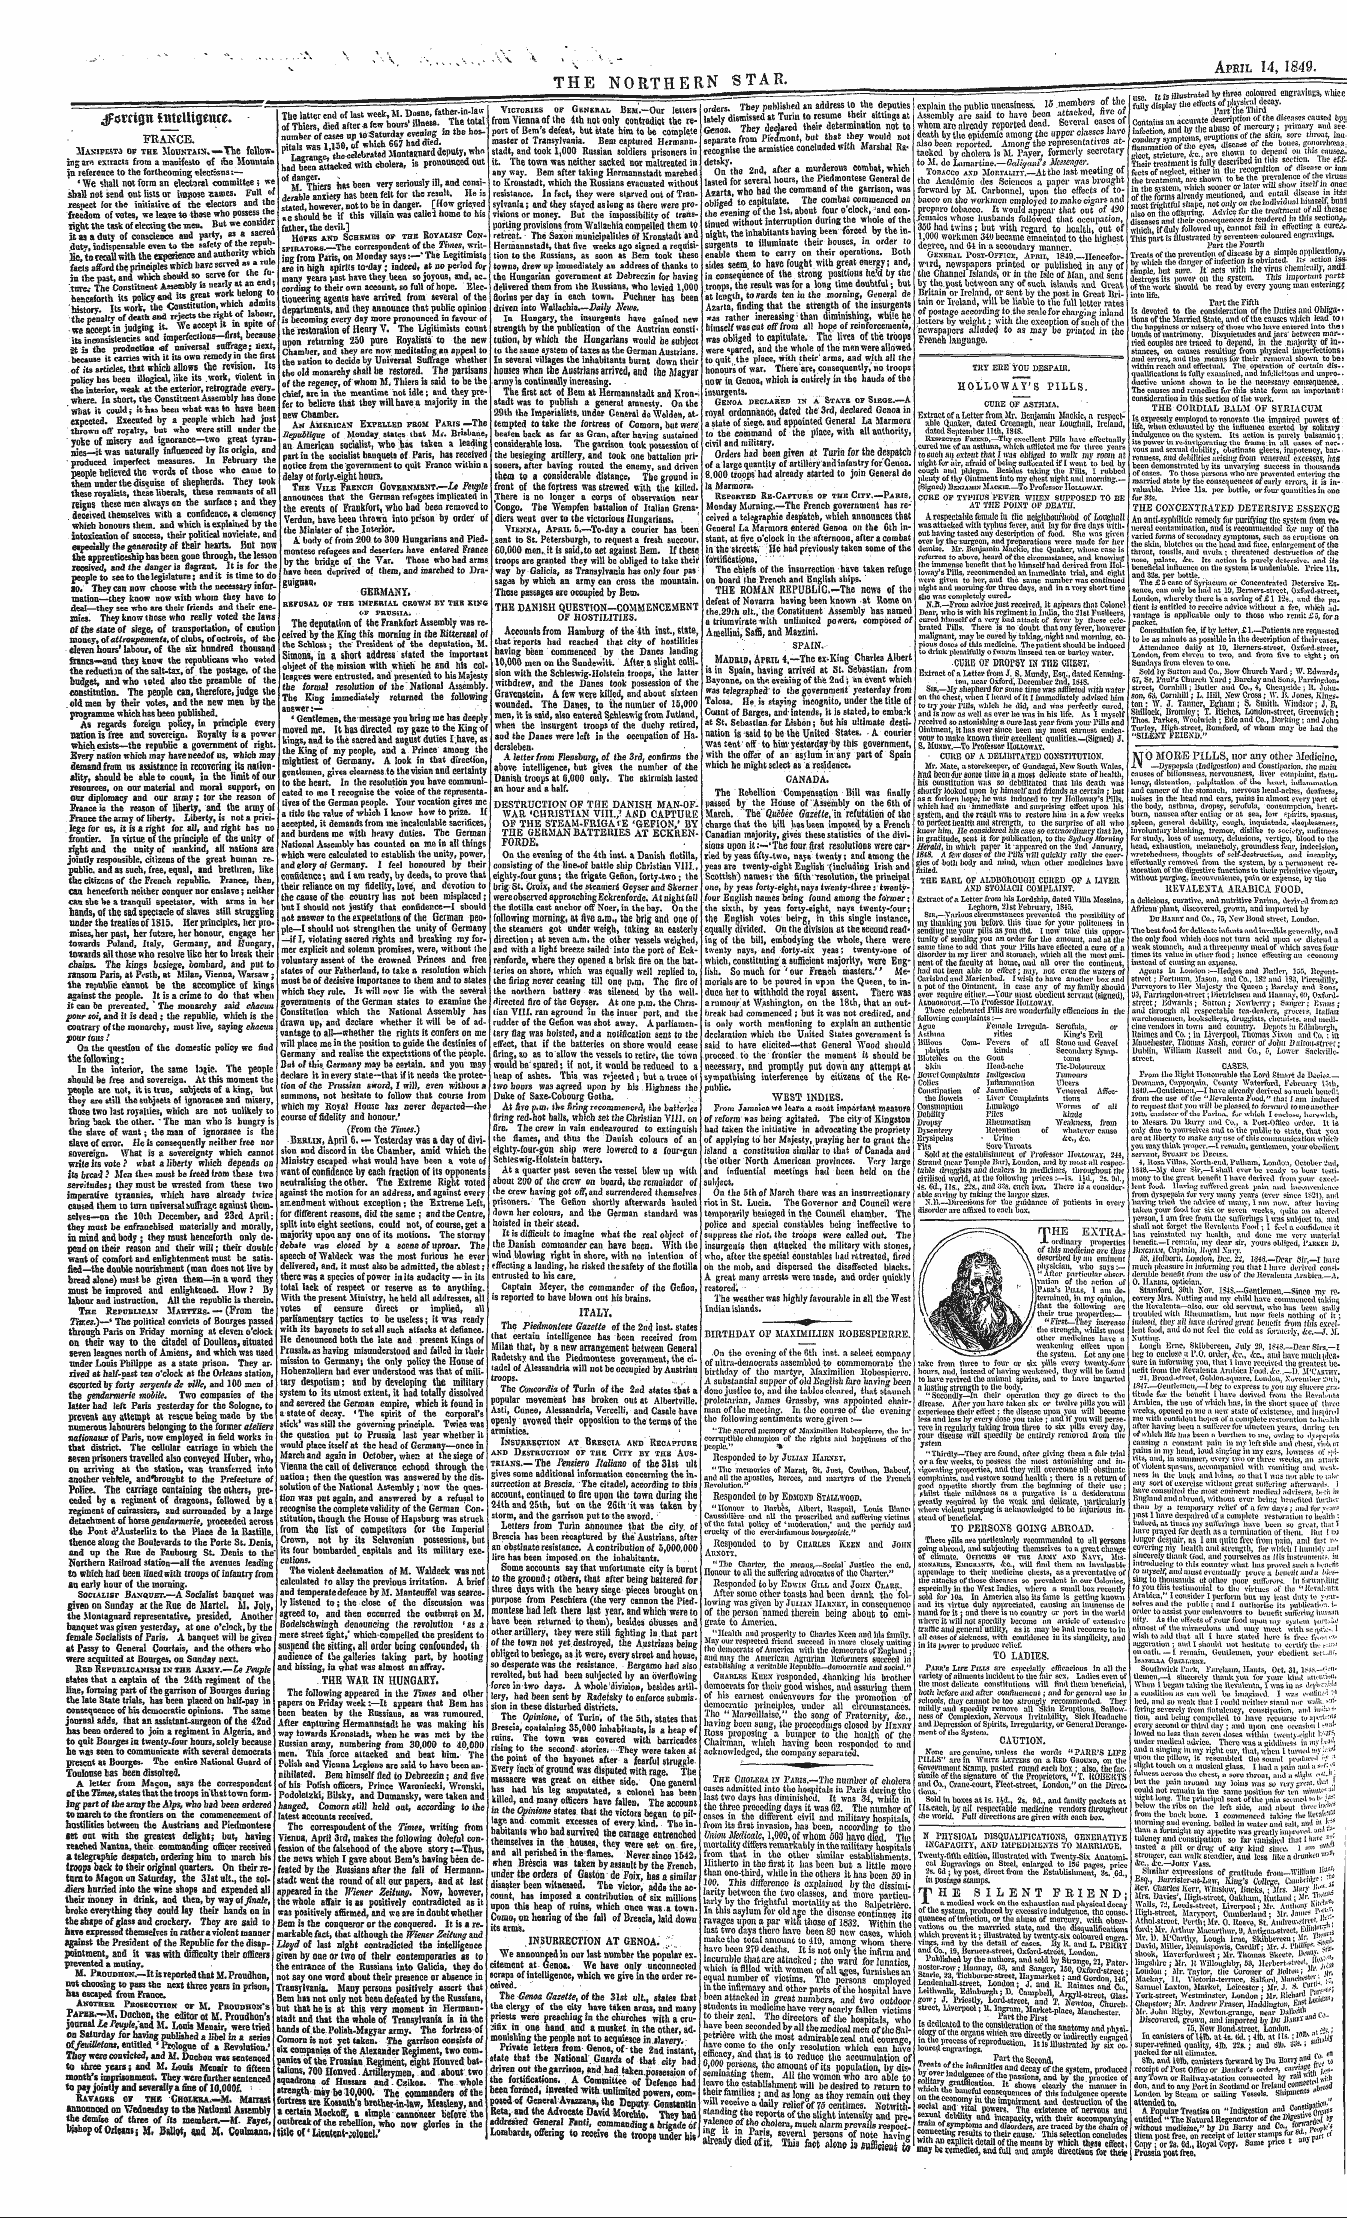 Northern Star (1837-1852): jS F Y, 3rd edition - '" '" ^ S. "" V N N "V - -\.>.,-. ¦ ^ -V...